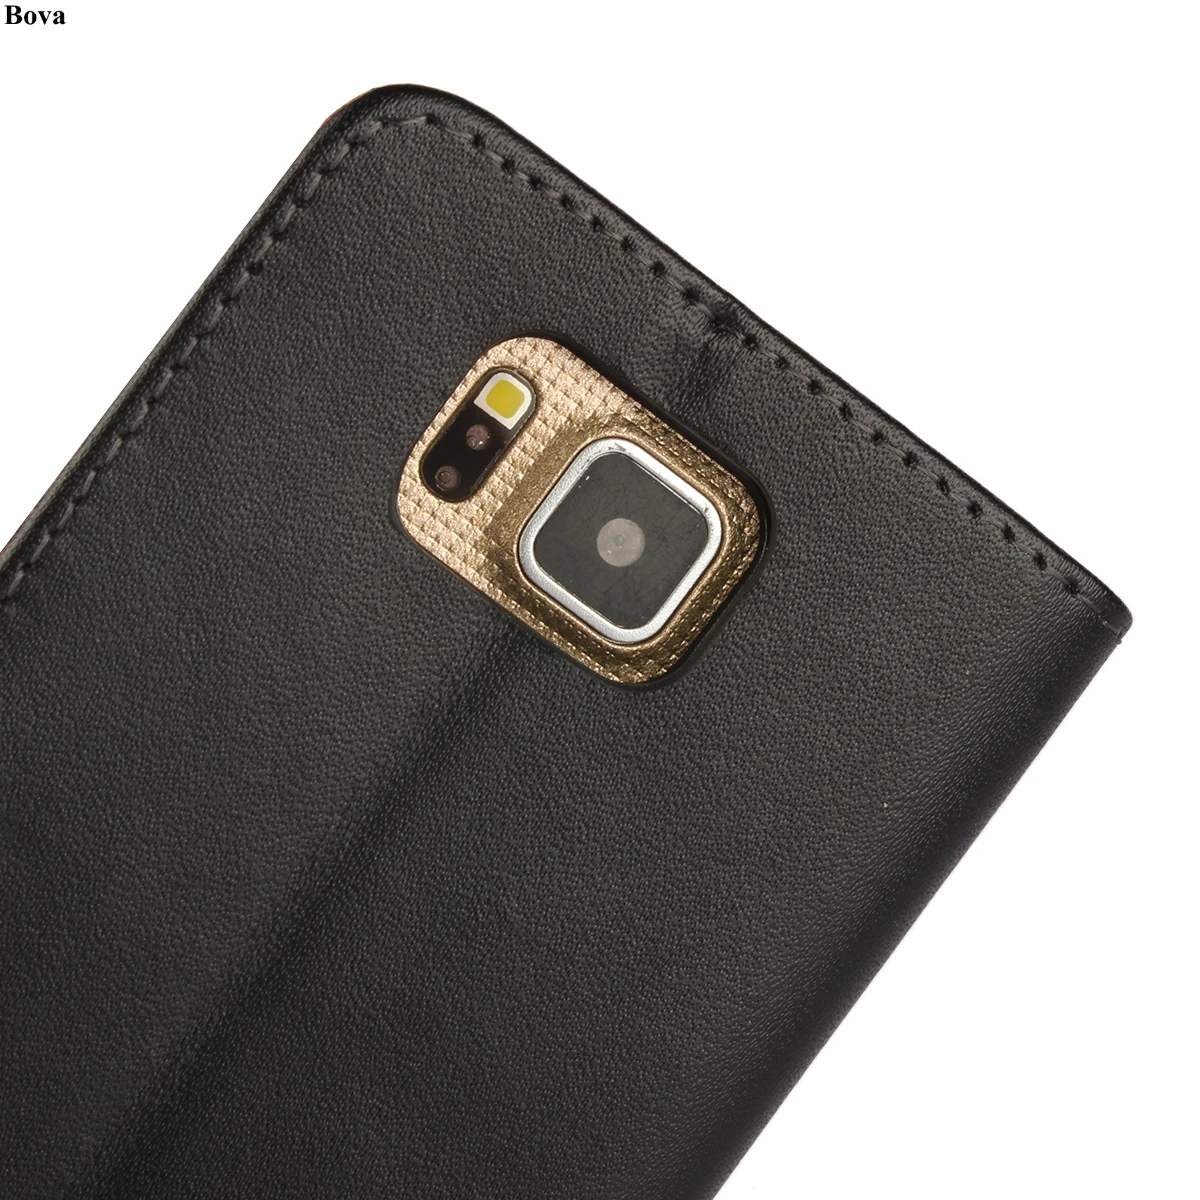 Кожаный чехол-кошелек Ccover для samsung Galaxy Alpha G8508s G850f G850s чехол Роскошный флип-чехол держатель для карт кобура для телефона GG